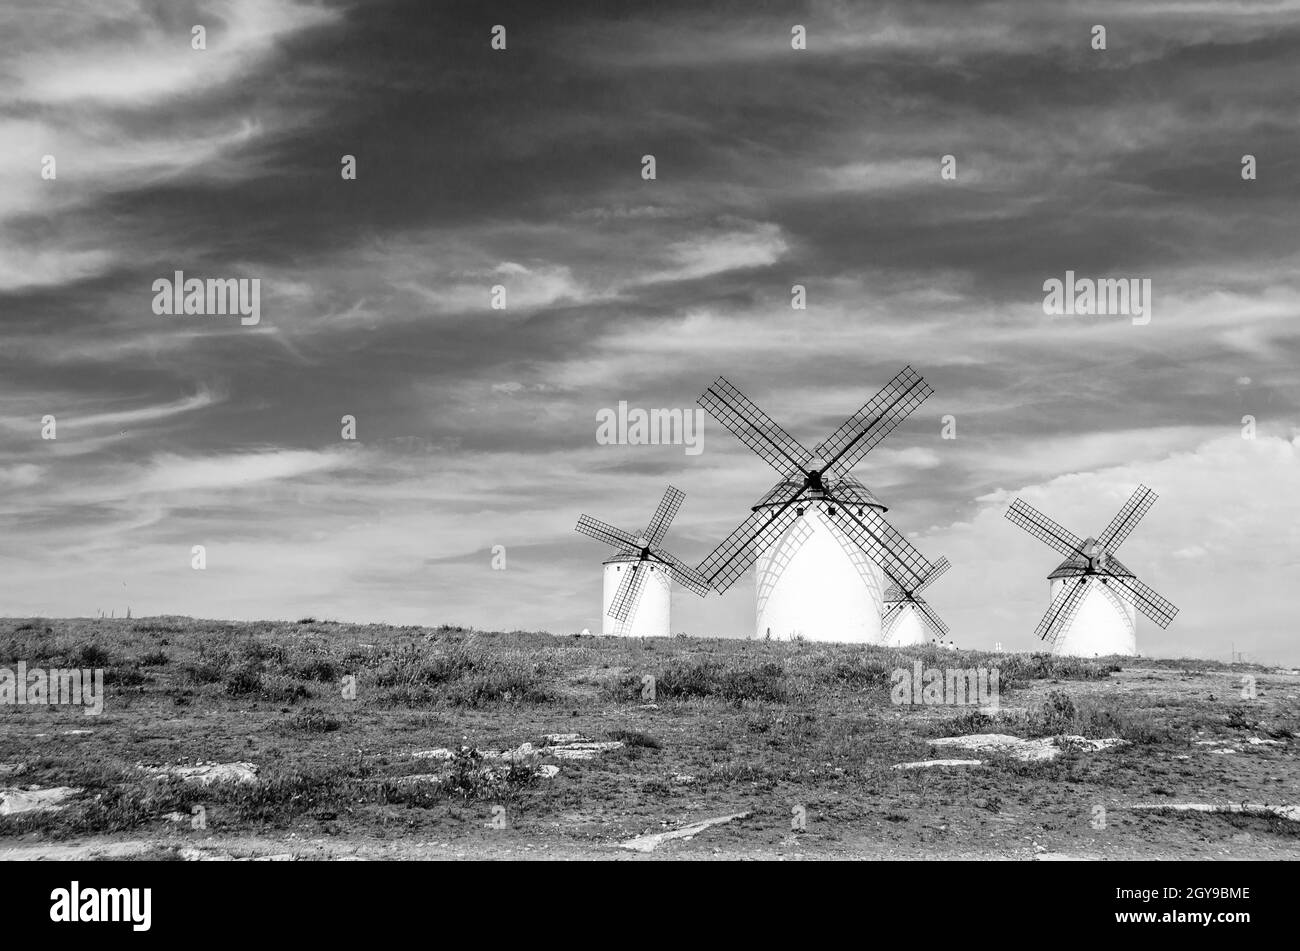 Tipico mulino a vento di campo de Crippana, in Spagna, sulla via Don Chisciotte, basato su un carattere letterario, si riferisce al percorso seguito dal protagonista Foto Stock